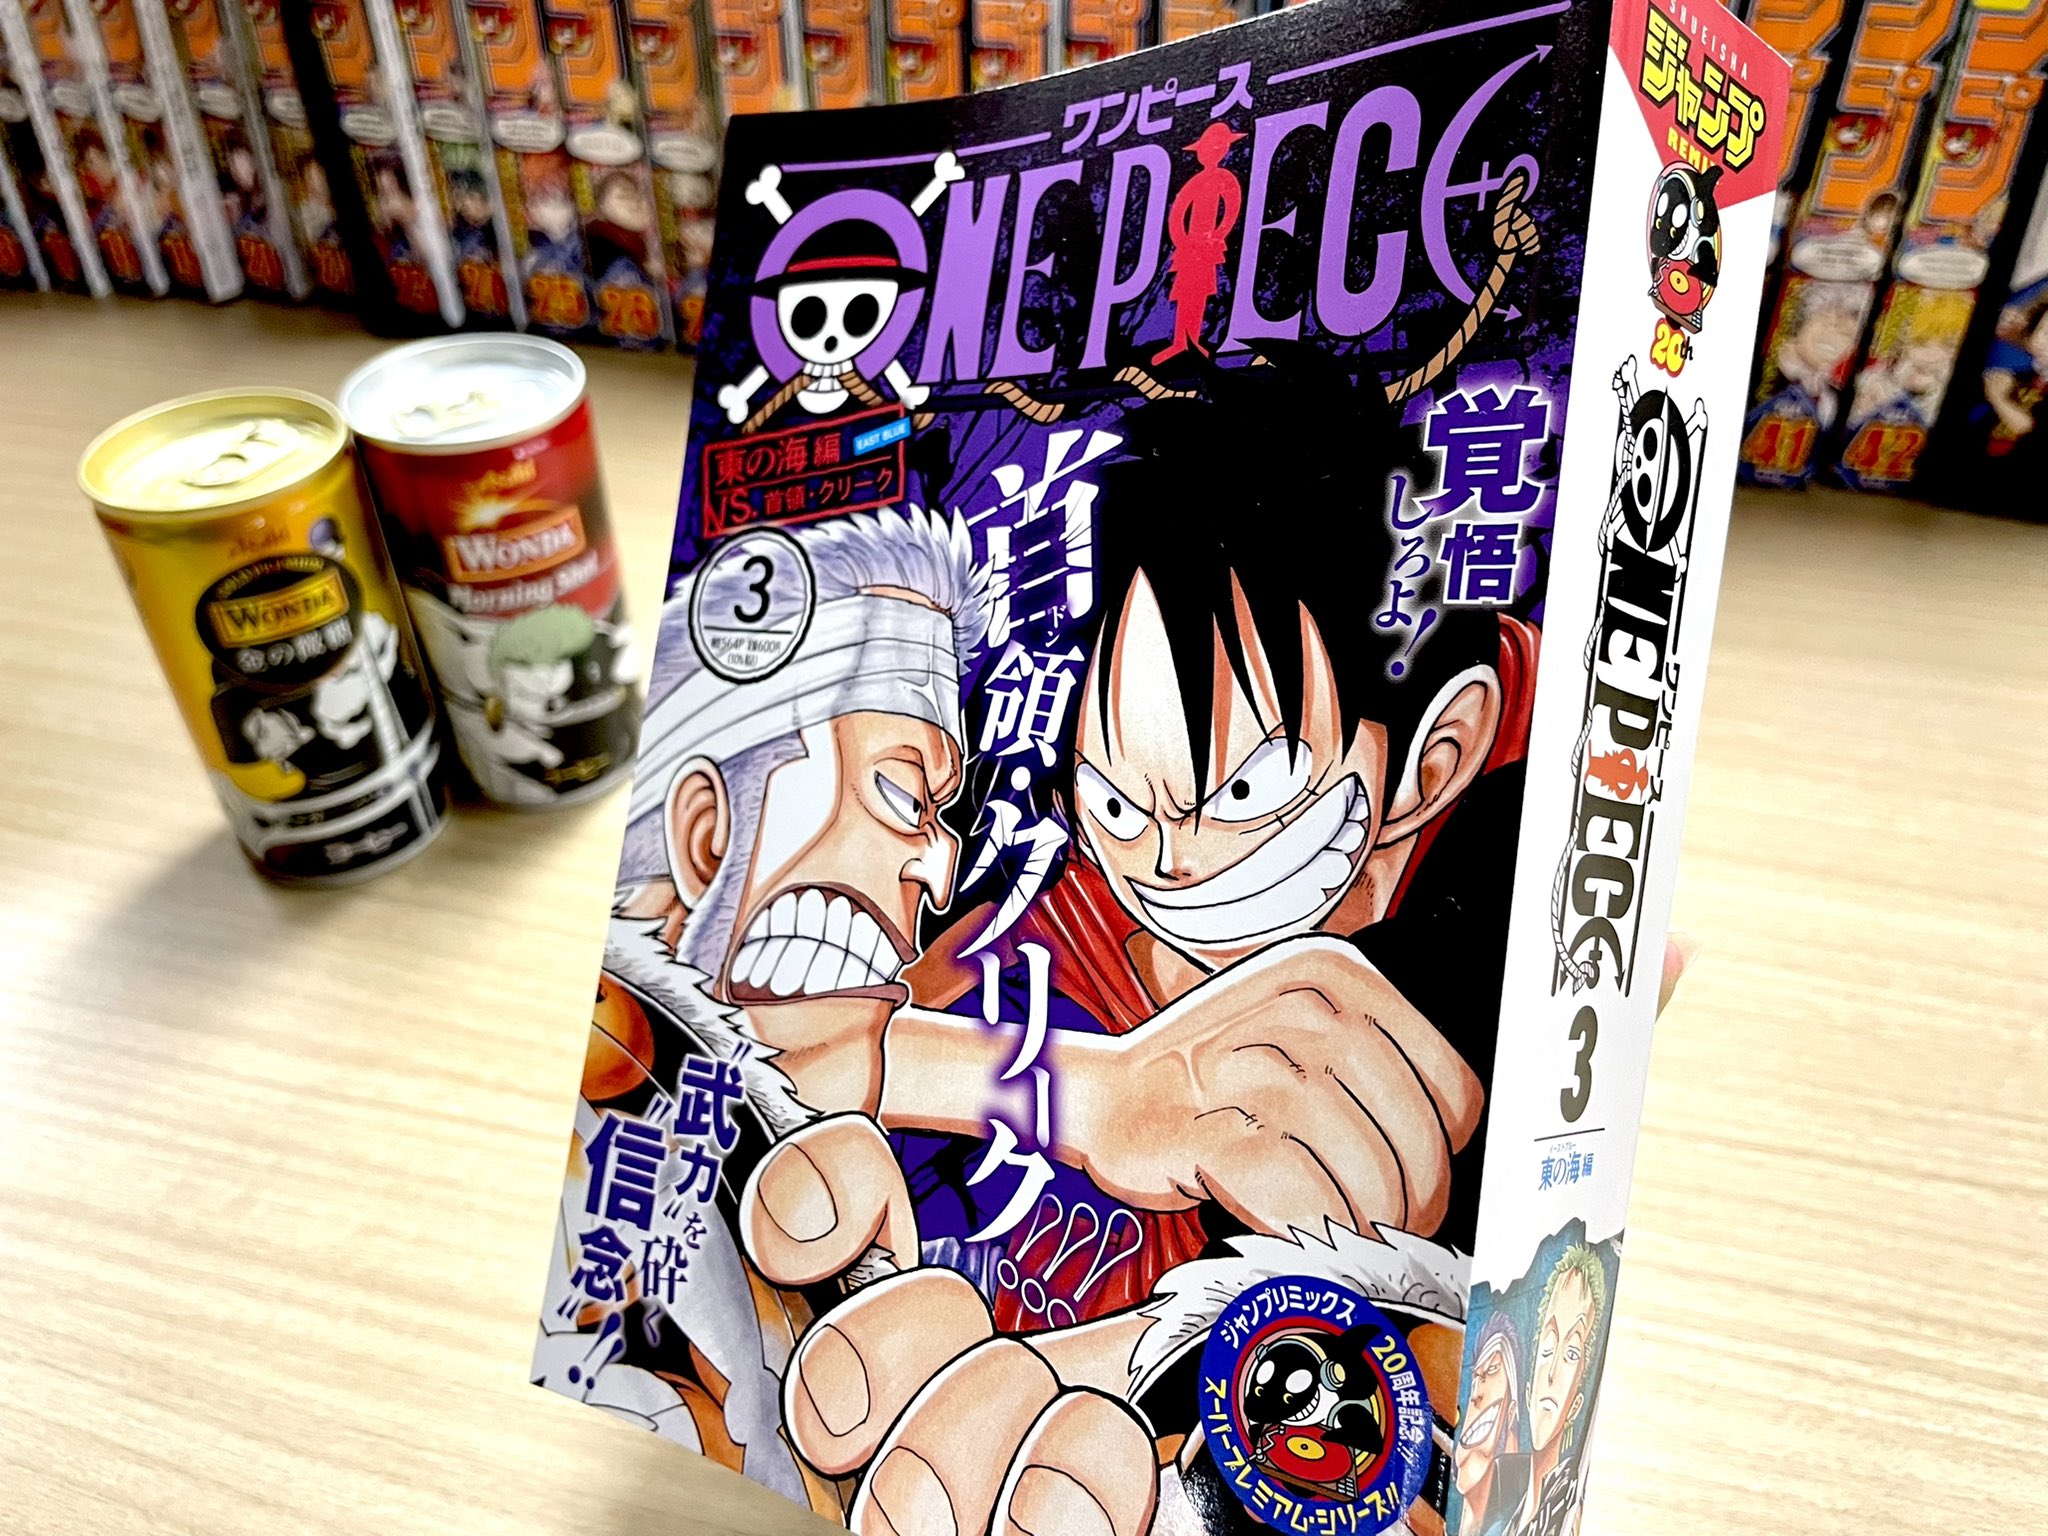 One Piece スタッフ 公式 Official ジャンプリミックスone Piece 3巻 東の海 編 Vs 首領 クリーク 本日発売です 発売スパンは隔週金曜日 全国のコンビニなどで 手に入れることができます 公式サイトでチェック T Co